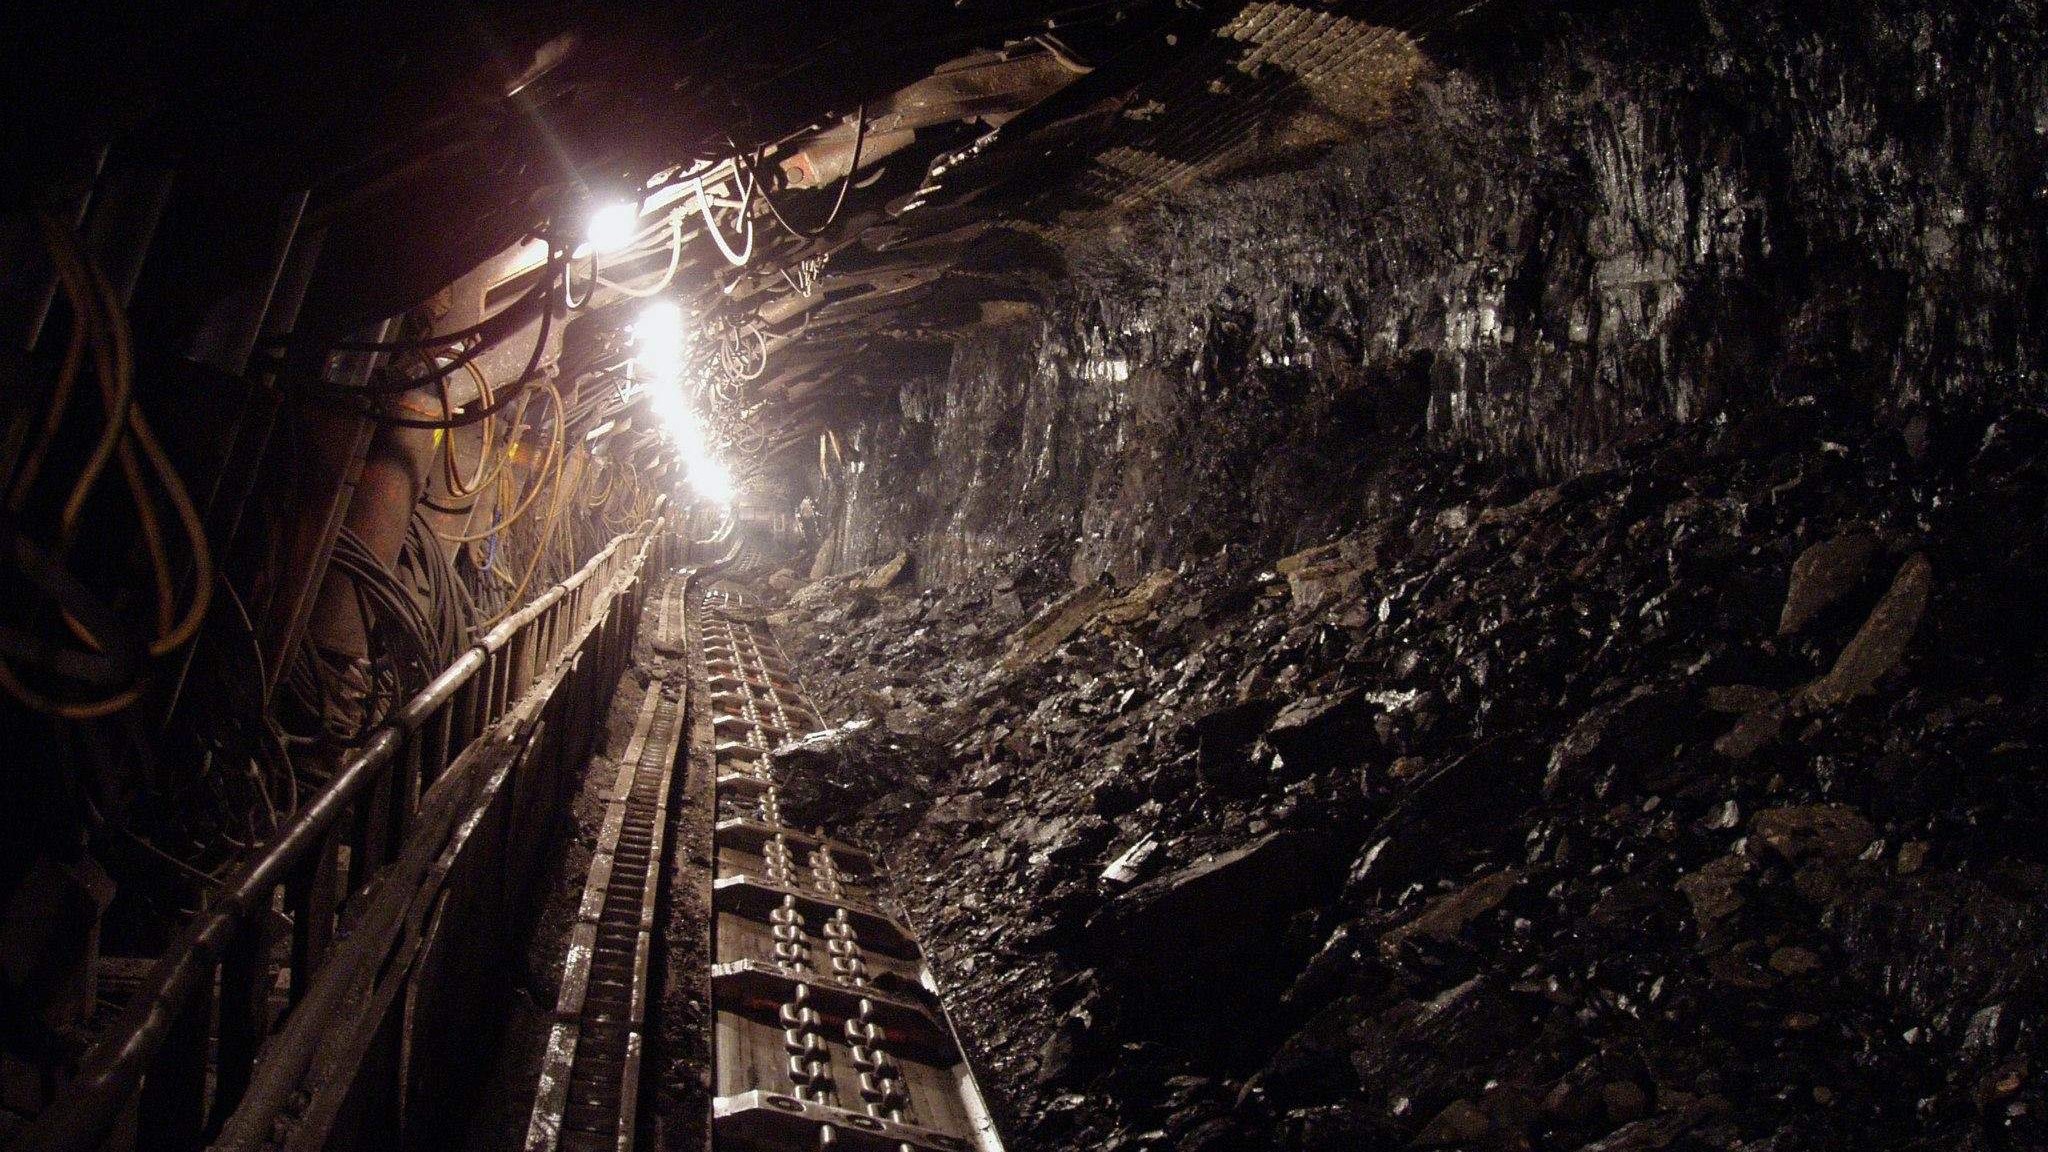 Zenički rudari ni jutros nisu sišli u jame, čekaju poziv na dogovor o plaćama